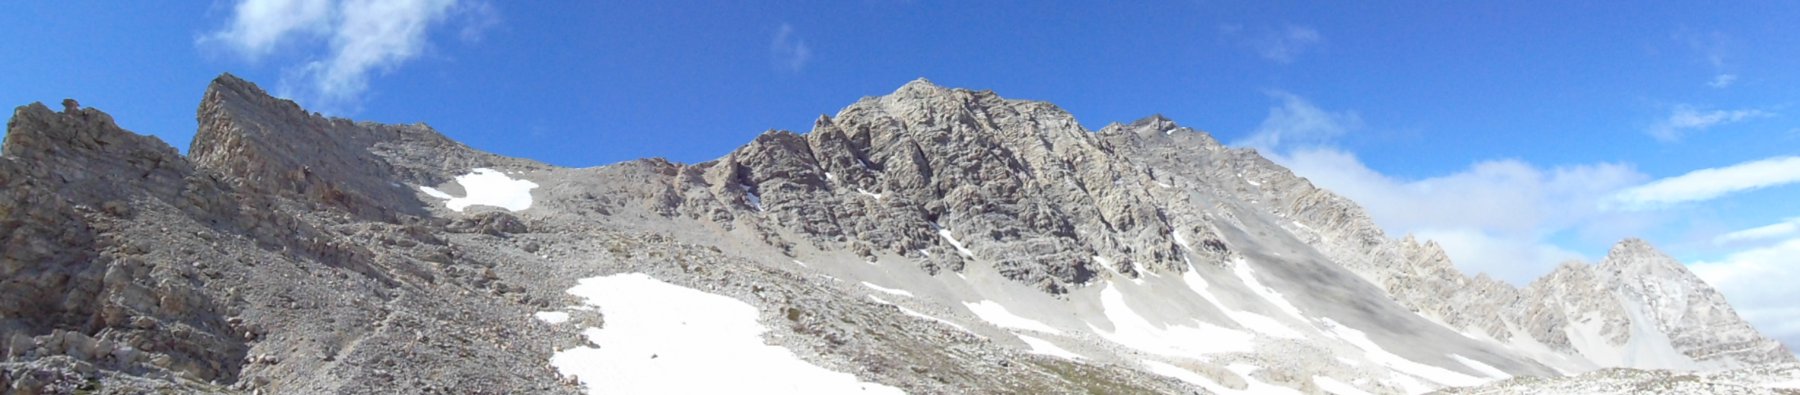 Rocca del Lago, Chalanche Ronde e Rocher des Pres